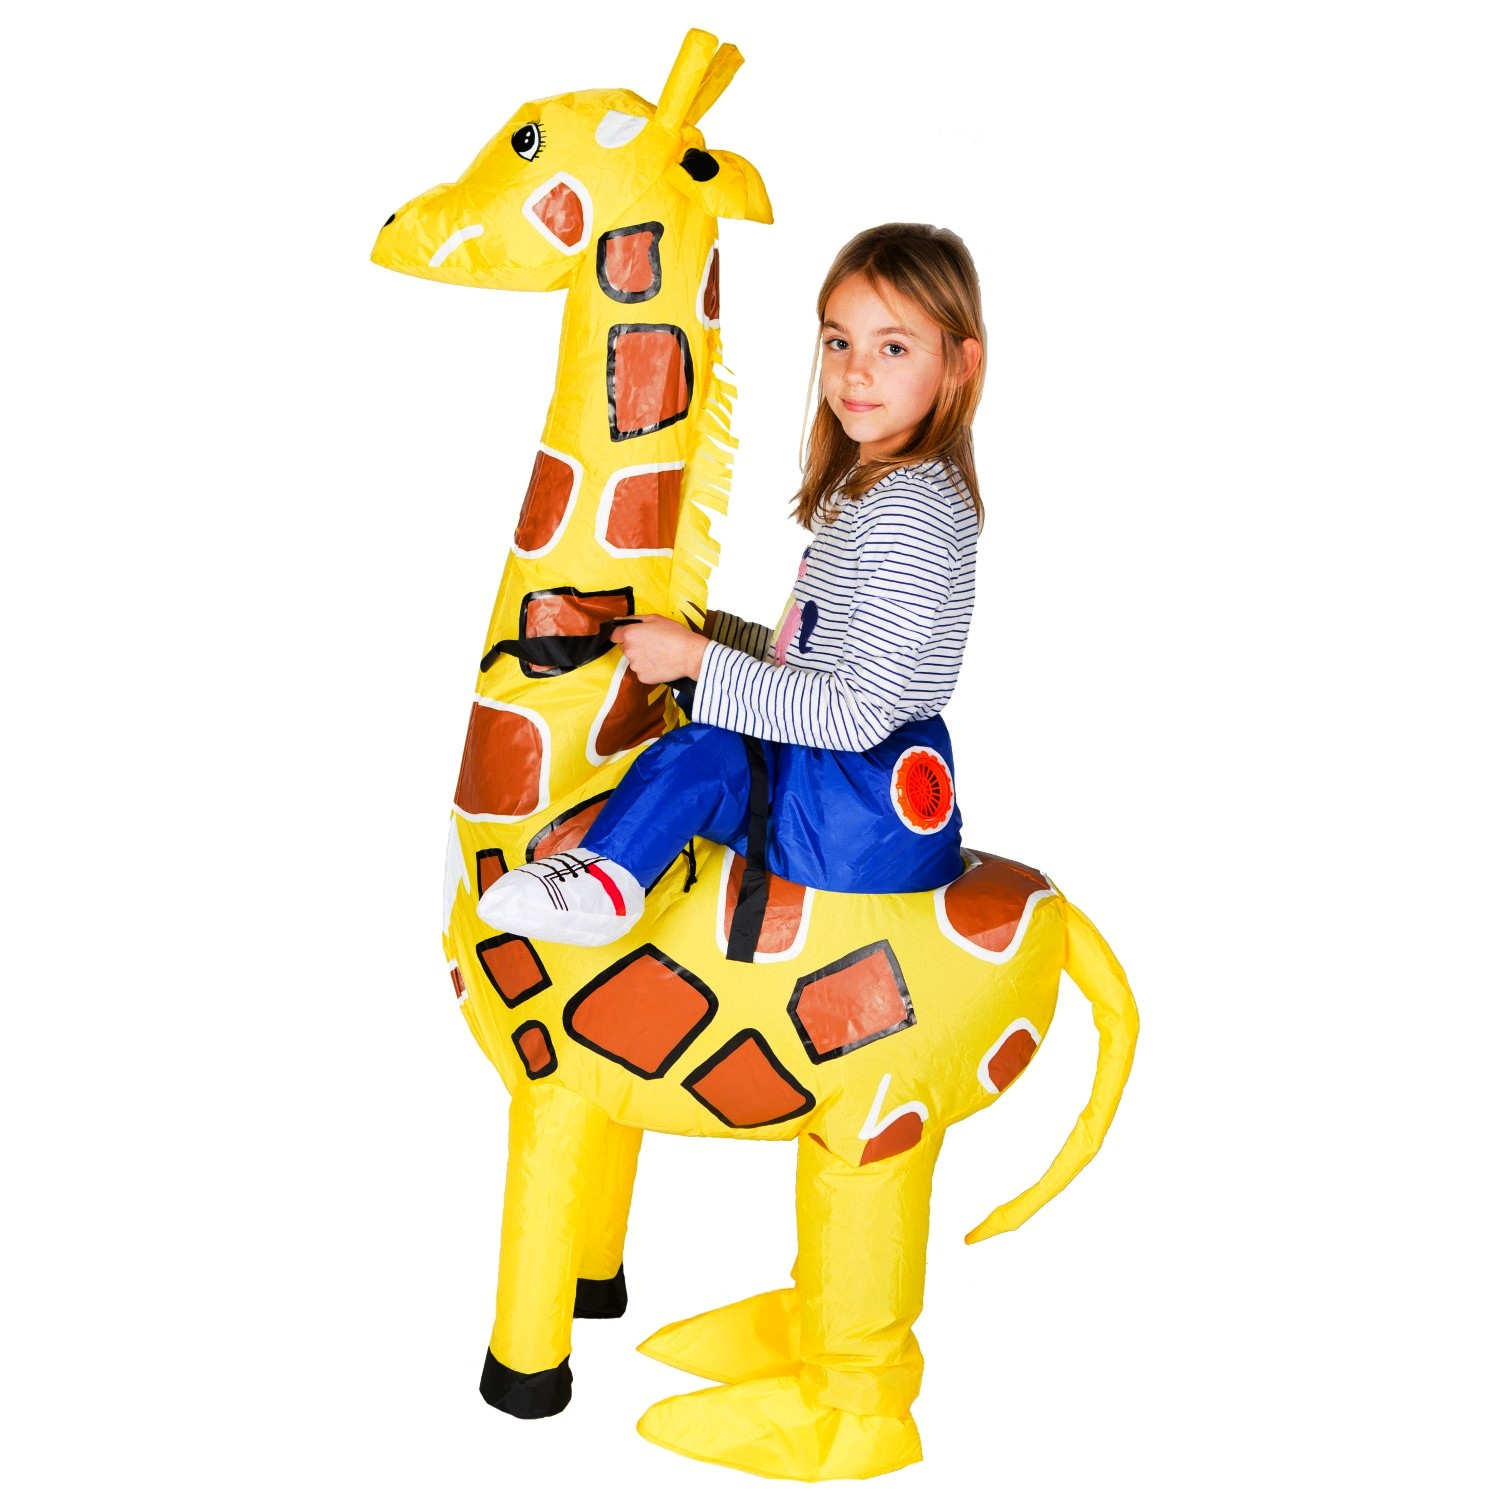 Bodysocks Inflatable Giraffe Costume for Kids